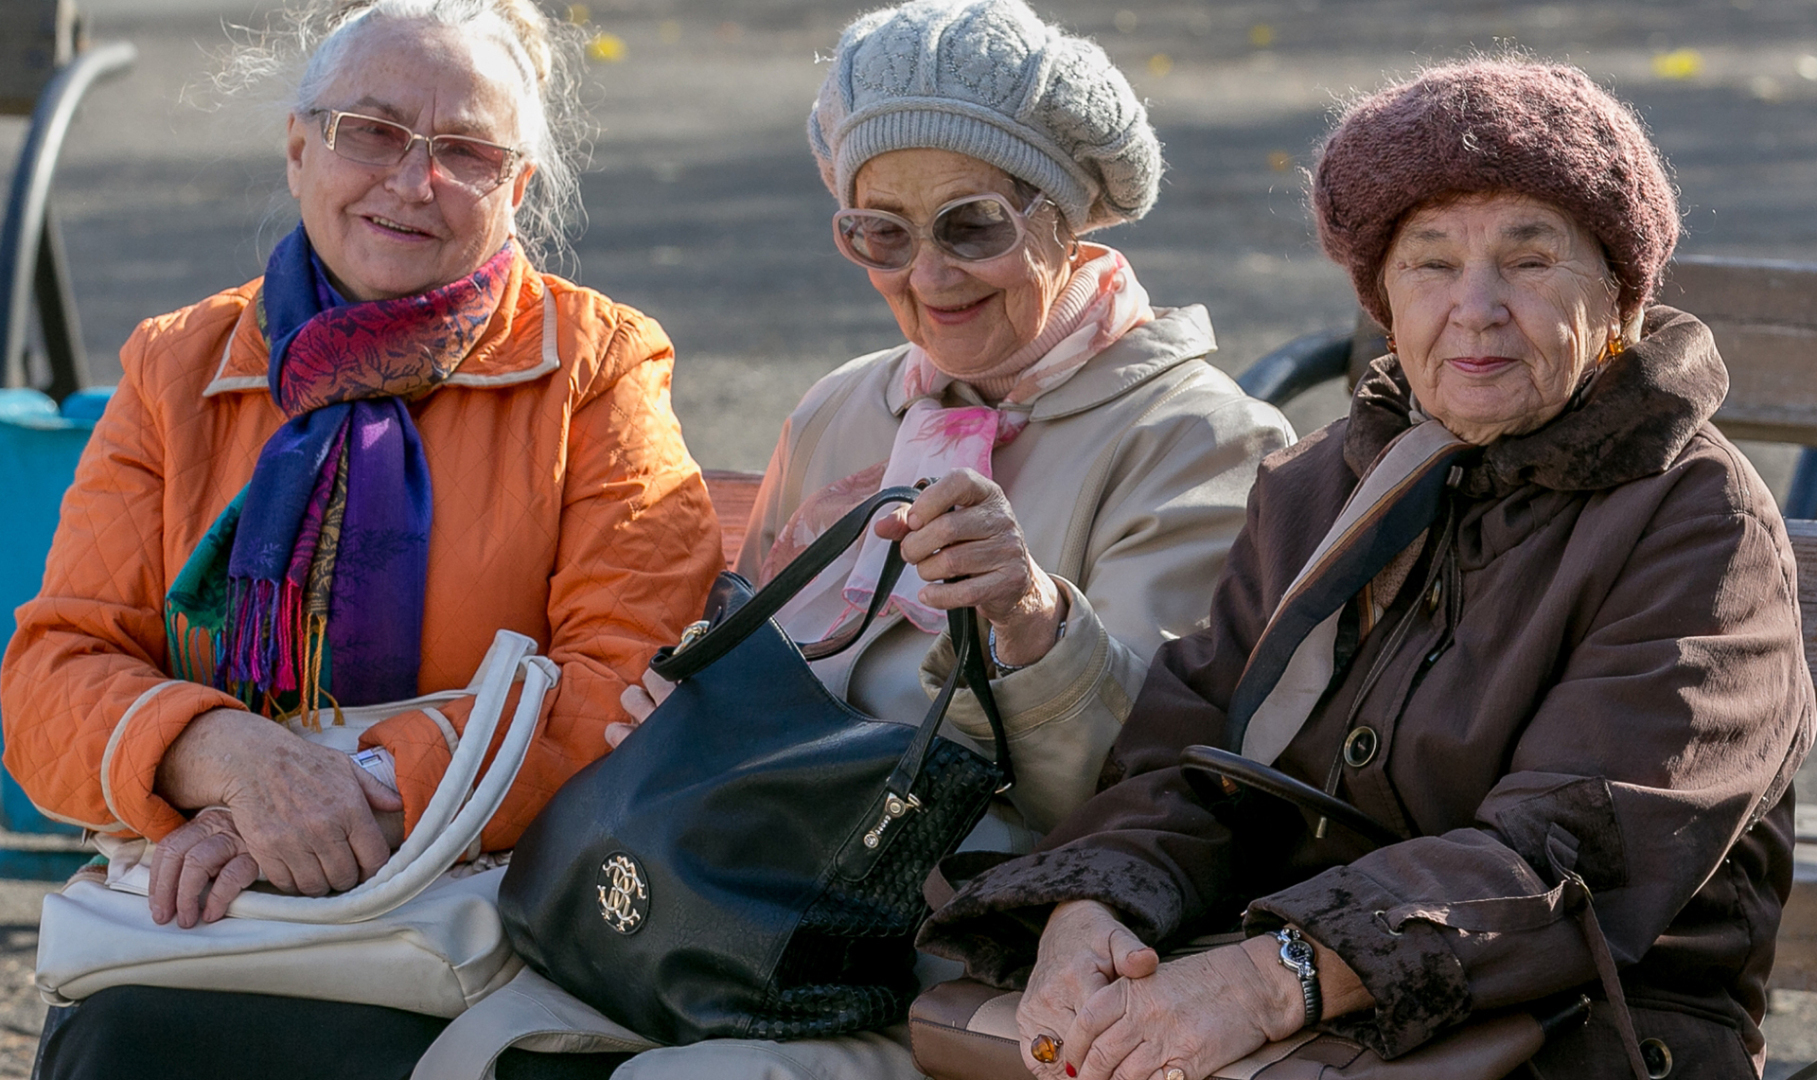 Пенсионерам разовые выплаты в январе 2022 ждать или нет. Выплатят ли по 15 или 20 тысяч рублей пожилым людям, что известно о новых путинских выплатах?